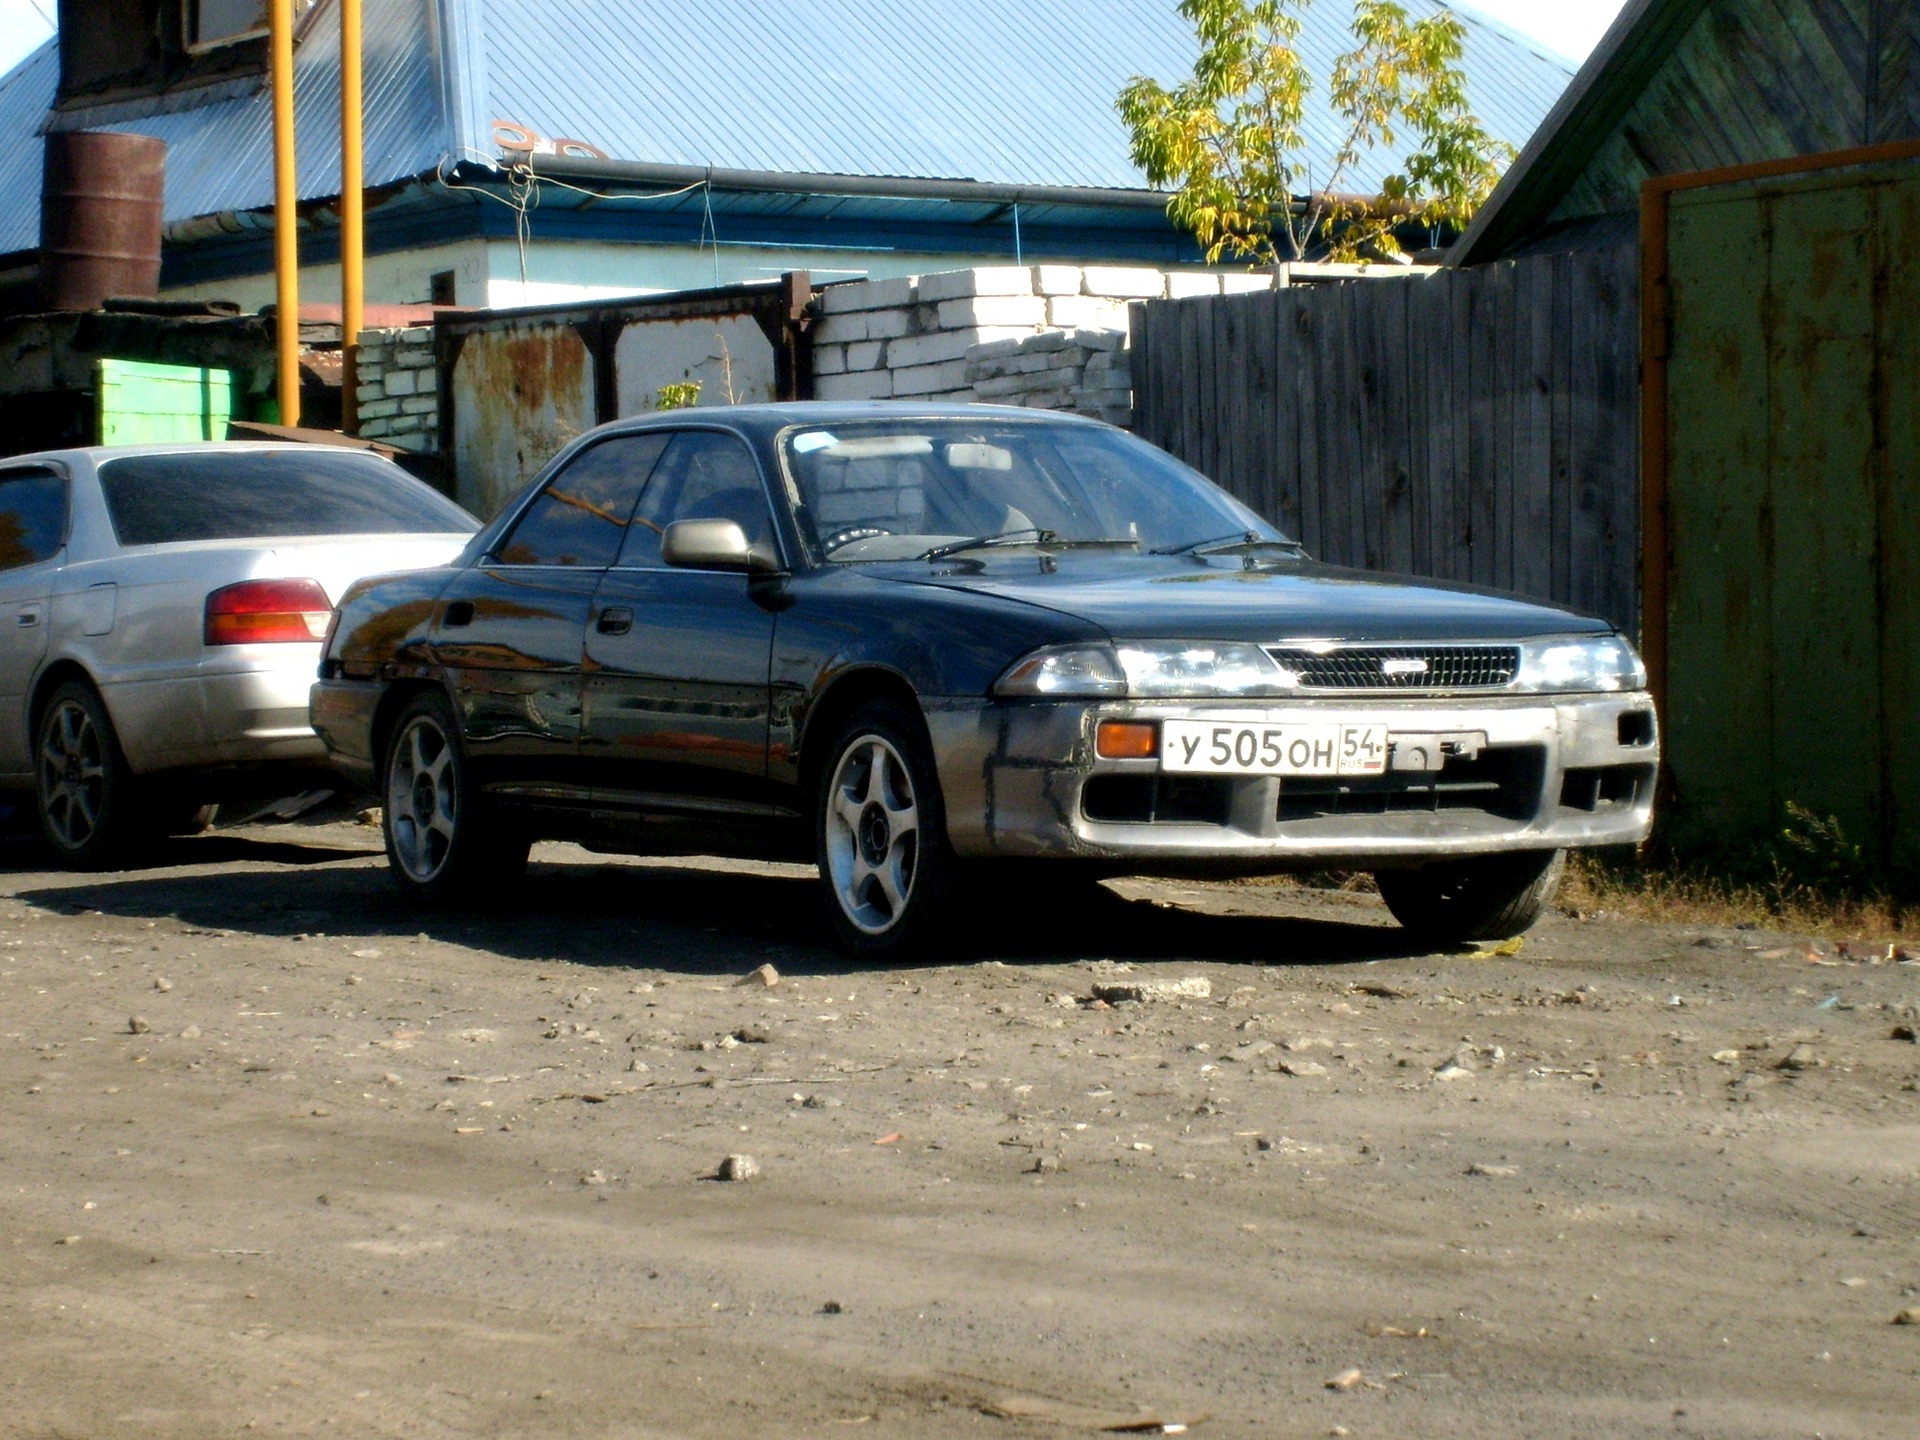    Toyota Carina ED 20 1989 